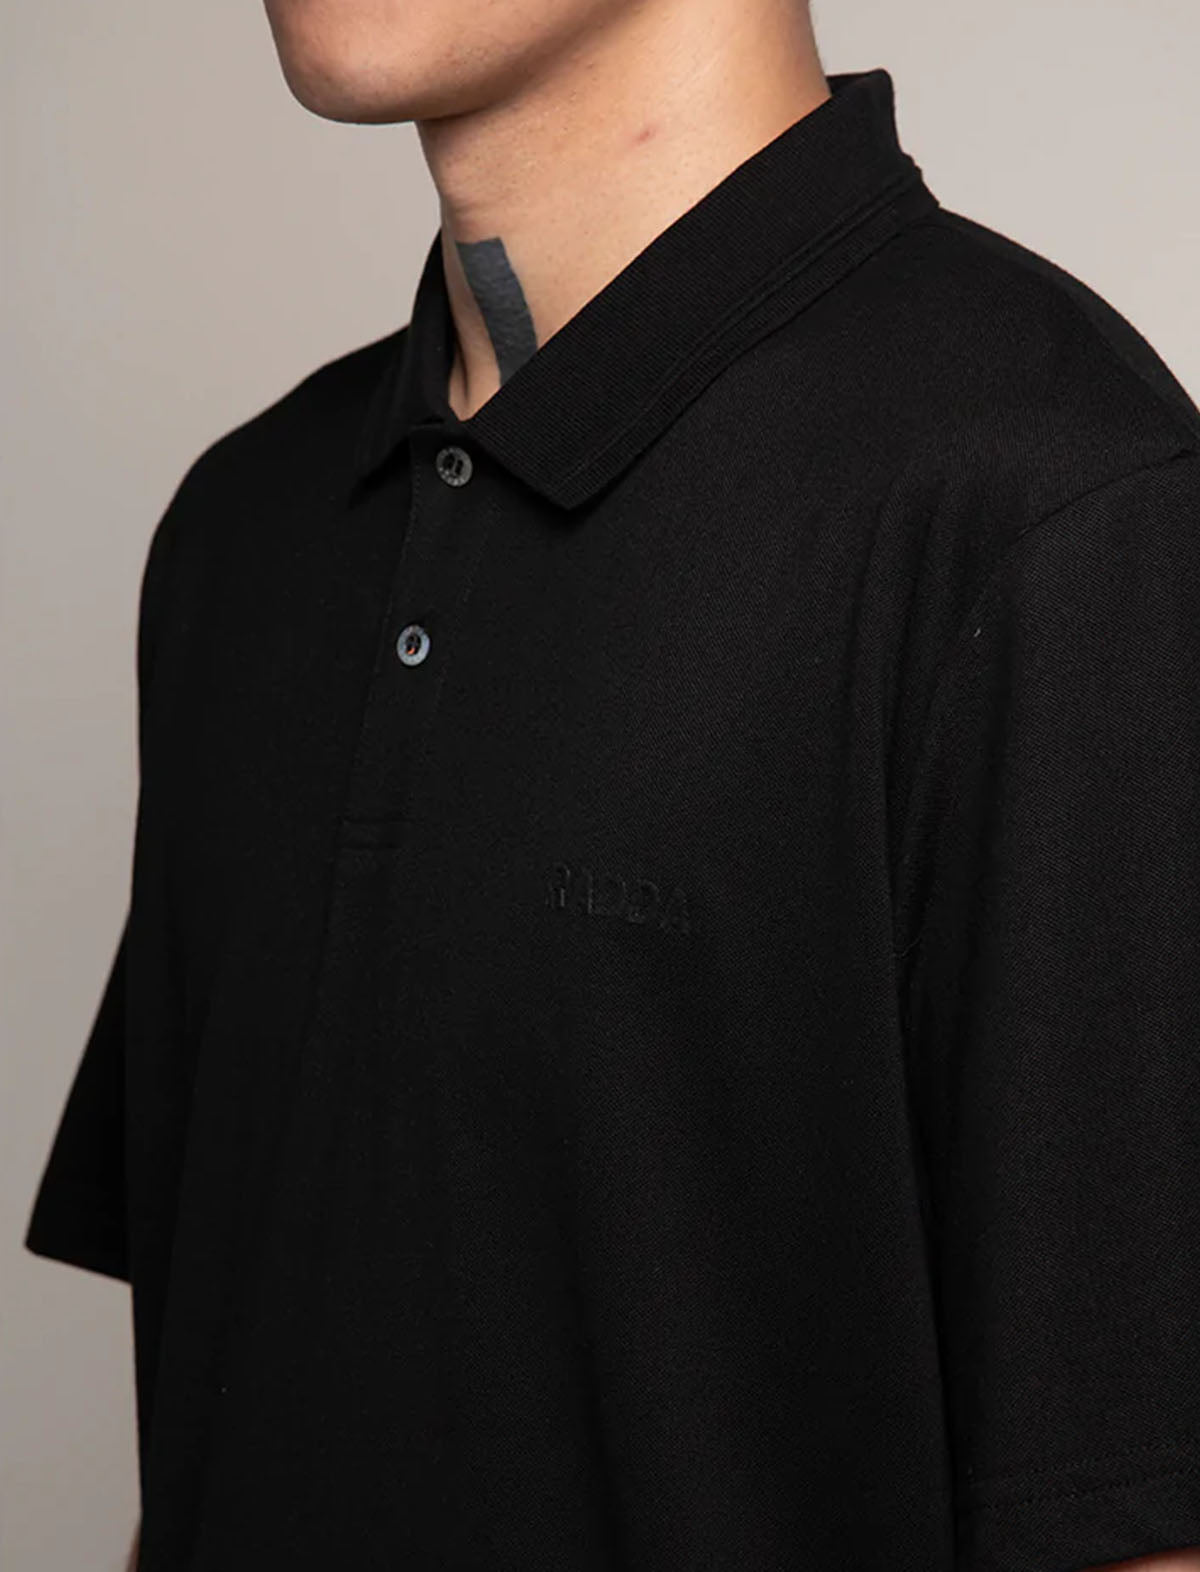 RADDA GOLF Hogan II Polo Shirt in Black